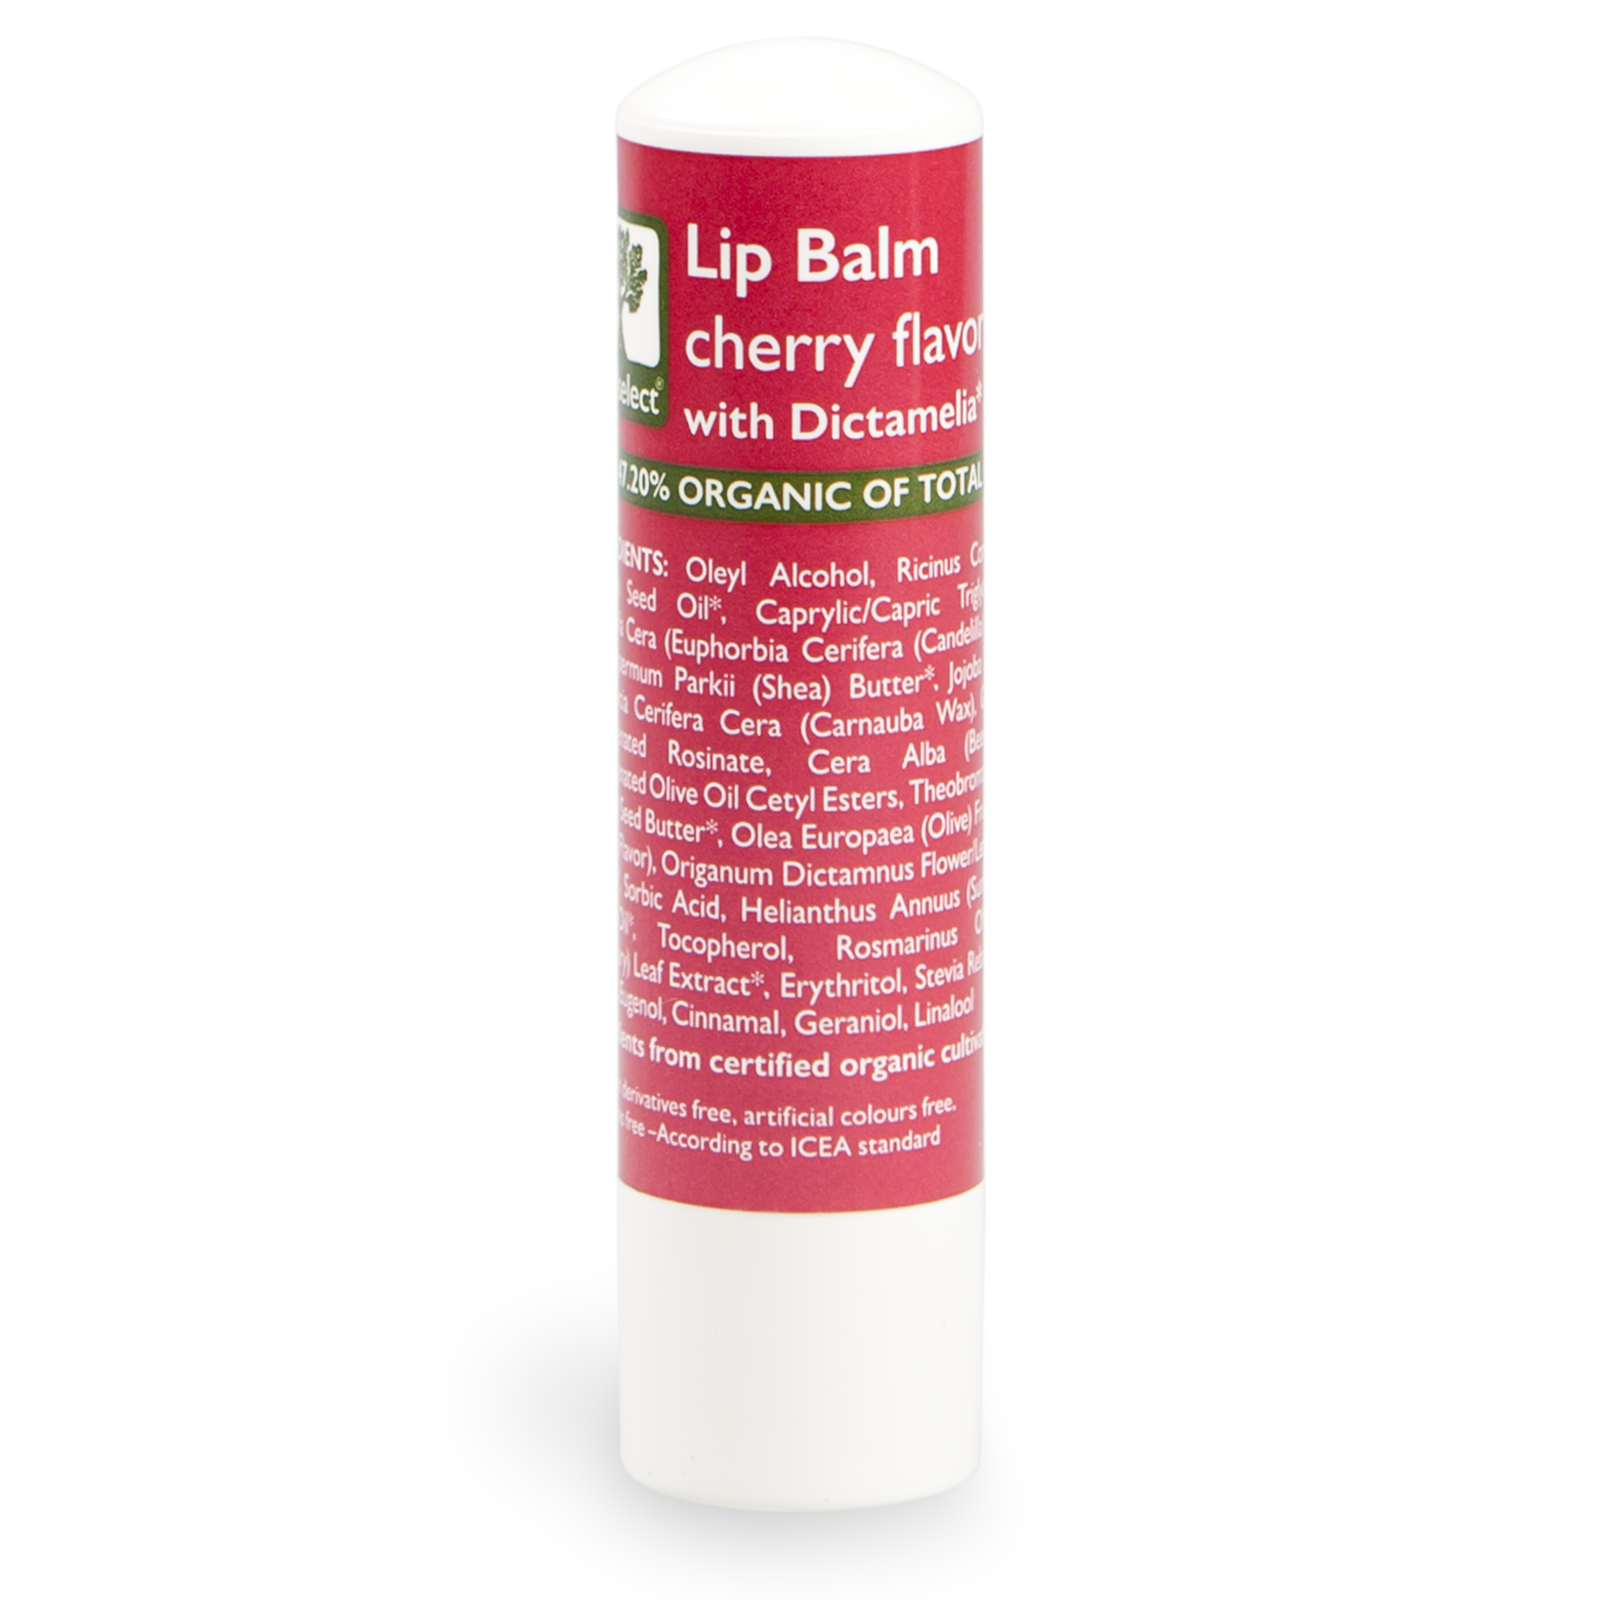 Bioselect Lip Balm cherry flavor